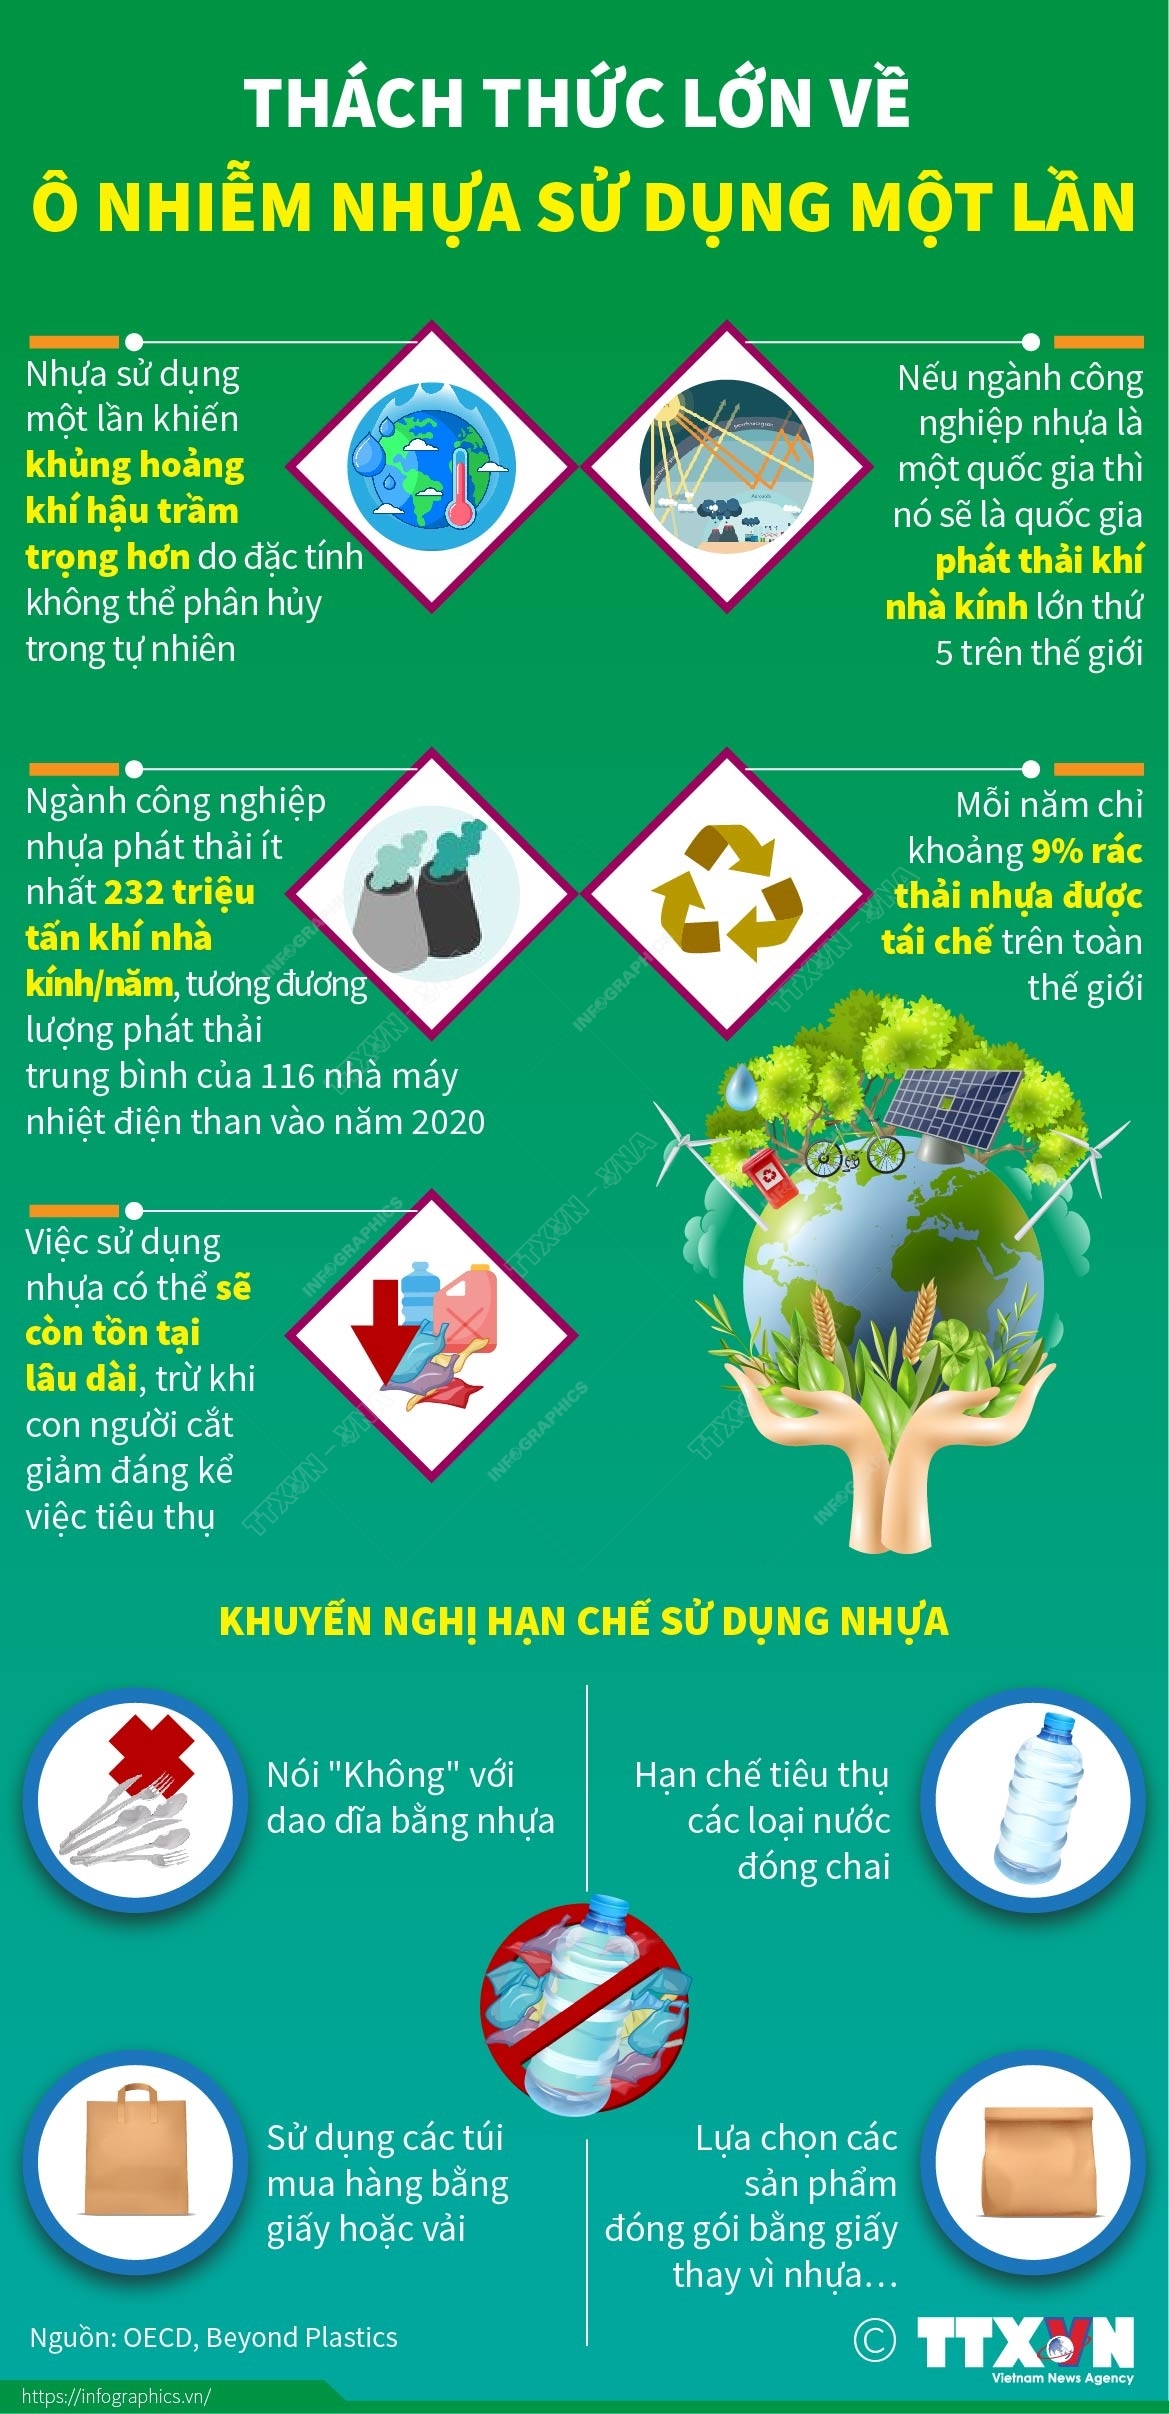 Nhựa sử dụng một lần: Nhựa một lần được sử dụng rộng rãi trong sinh hoạt hàng ngày. Hãy xem hình ảnh này để tìm hiểu cách sử dụng và tái chế nhựa một lần, giúp giảm thiểu lượng rác thải và bảo vệ môi trường.